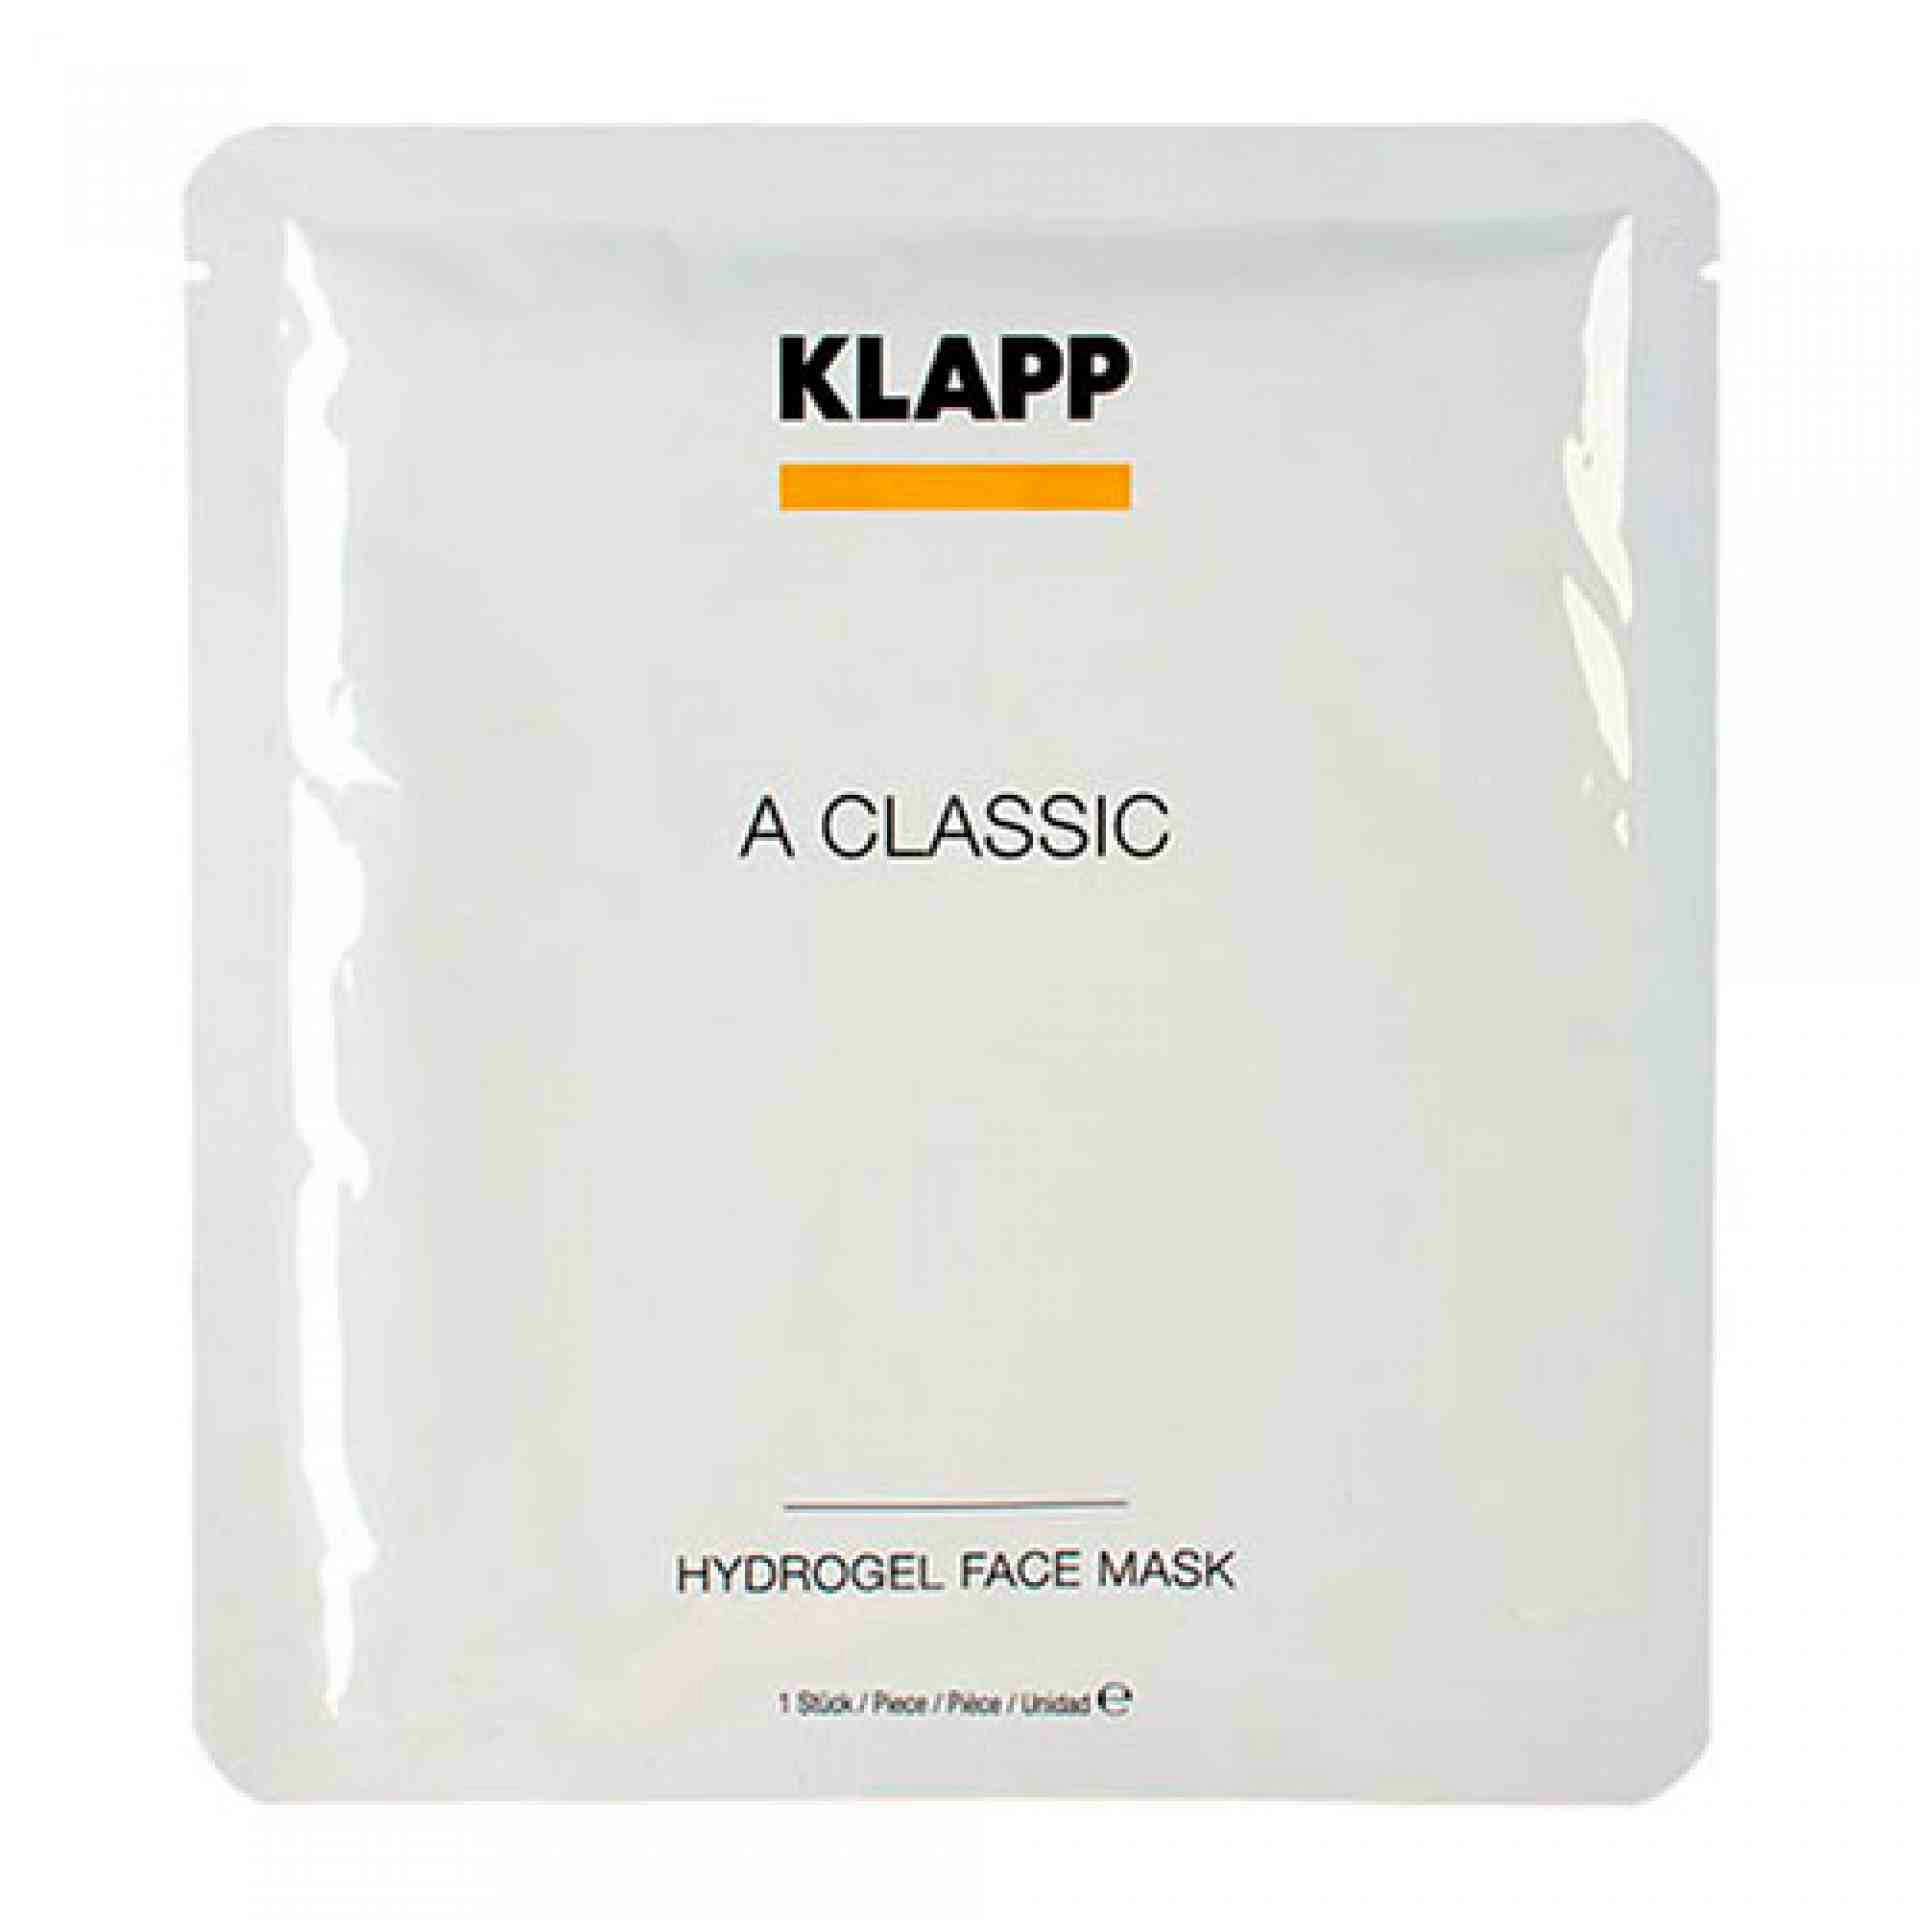 Hydrogel Face Mask | Mascarilla Facial Antiedad 1 pza. - A Classic - Klapp ®